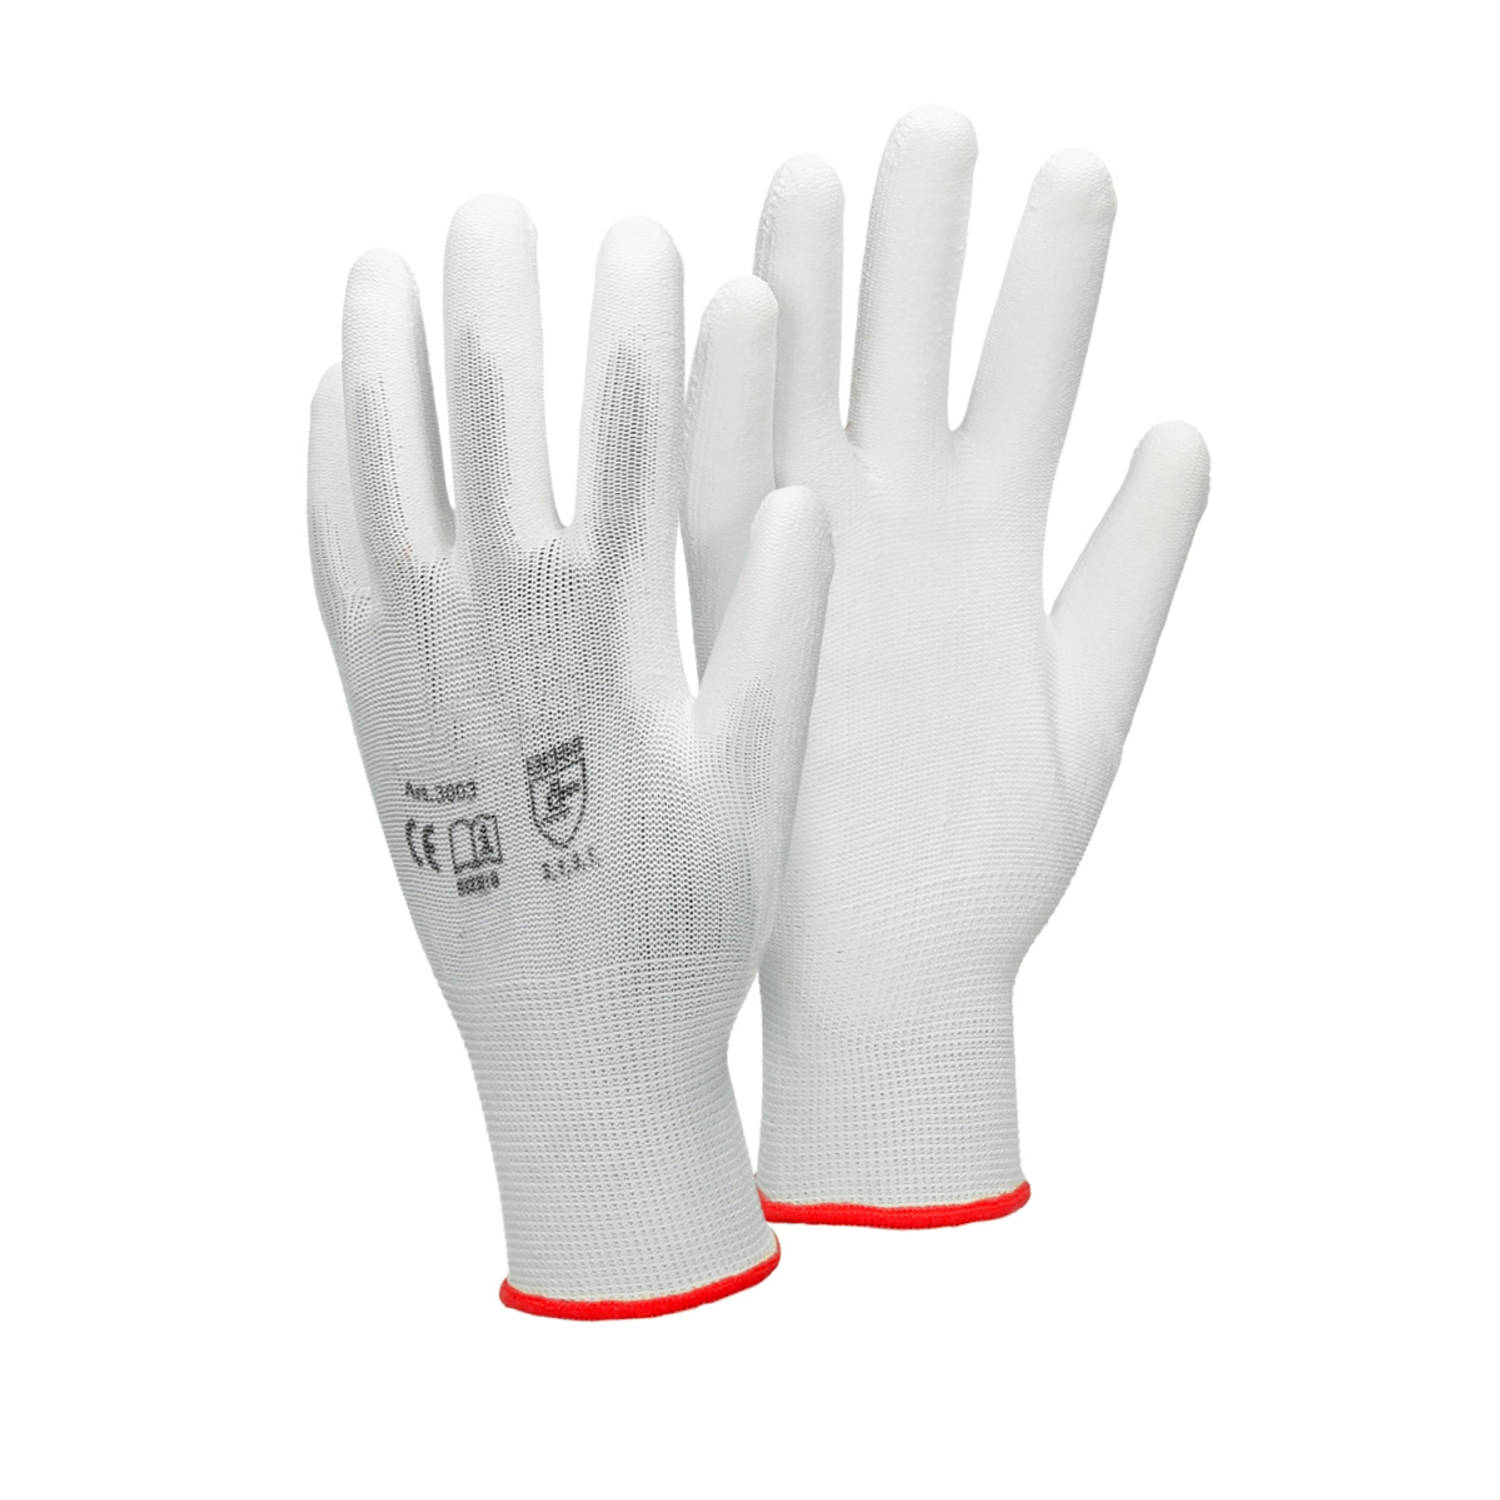 ECD Germany 24 paar werkhandschoenen met PU coating - maat 7-S - wit - monteurshandschoenen montagehandschoenen beschermende handschoenen tuinhandschoenen - diverse kleuren & maten